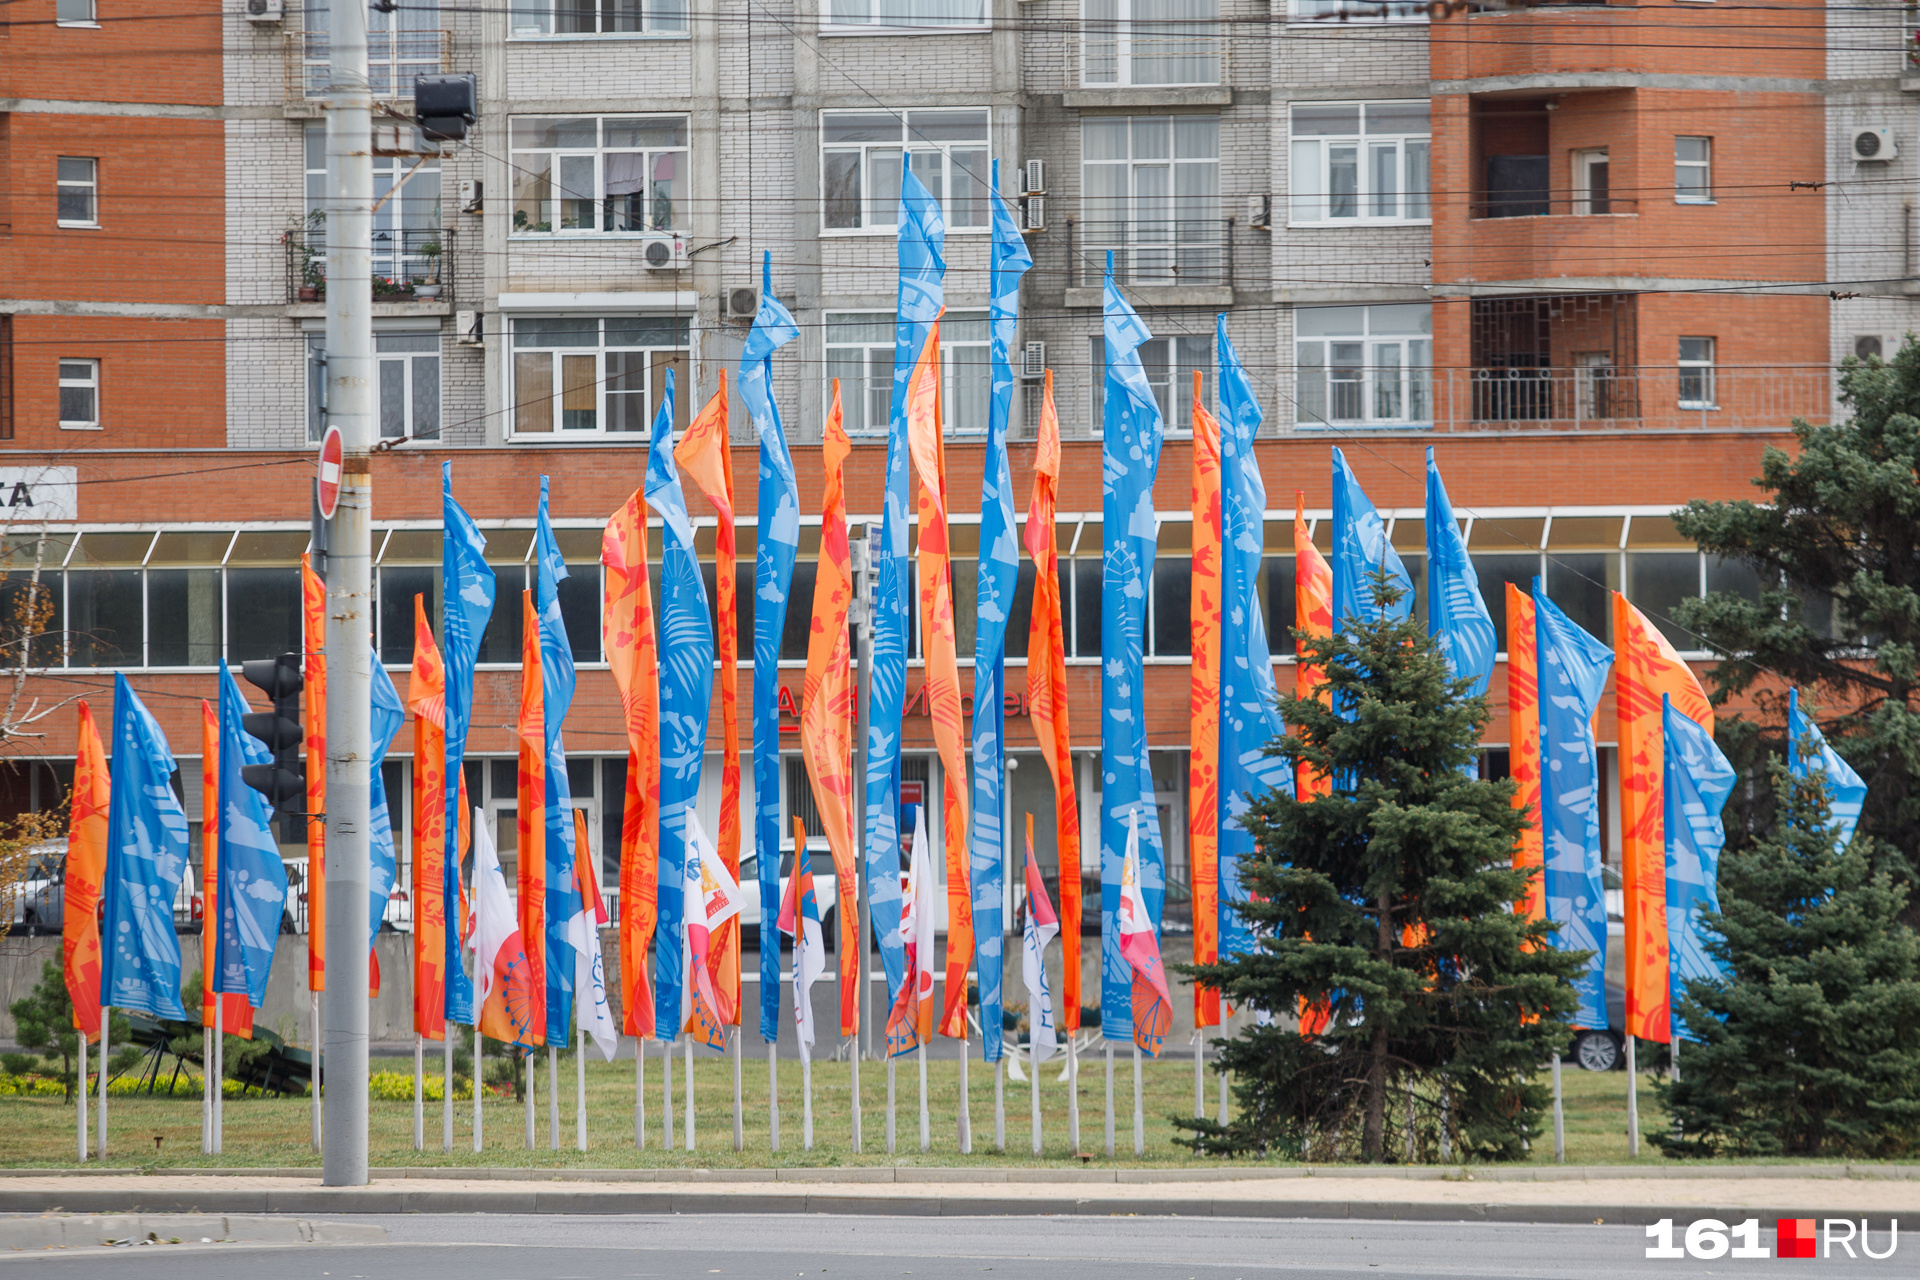 А вот на площади Гагарина только флаги